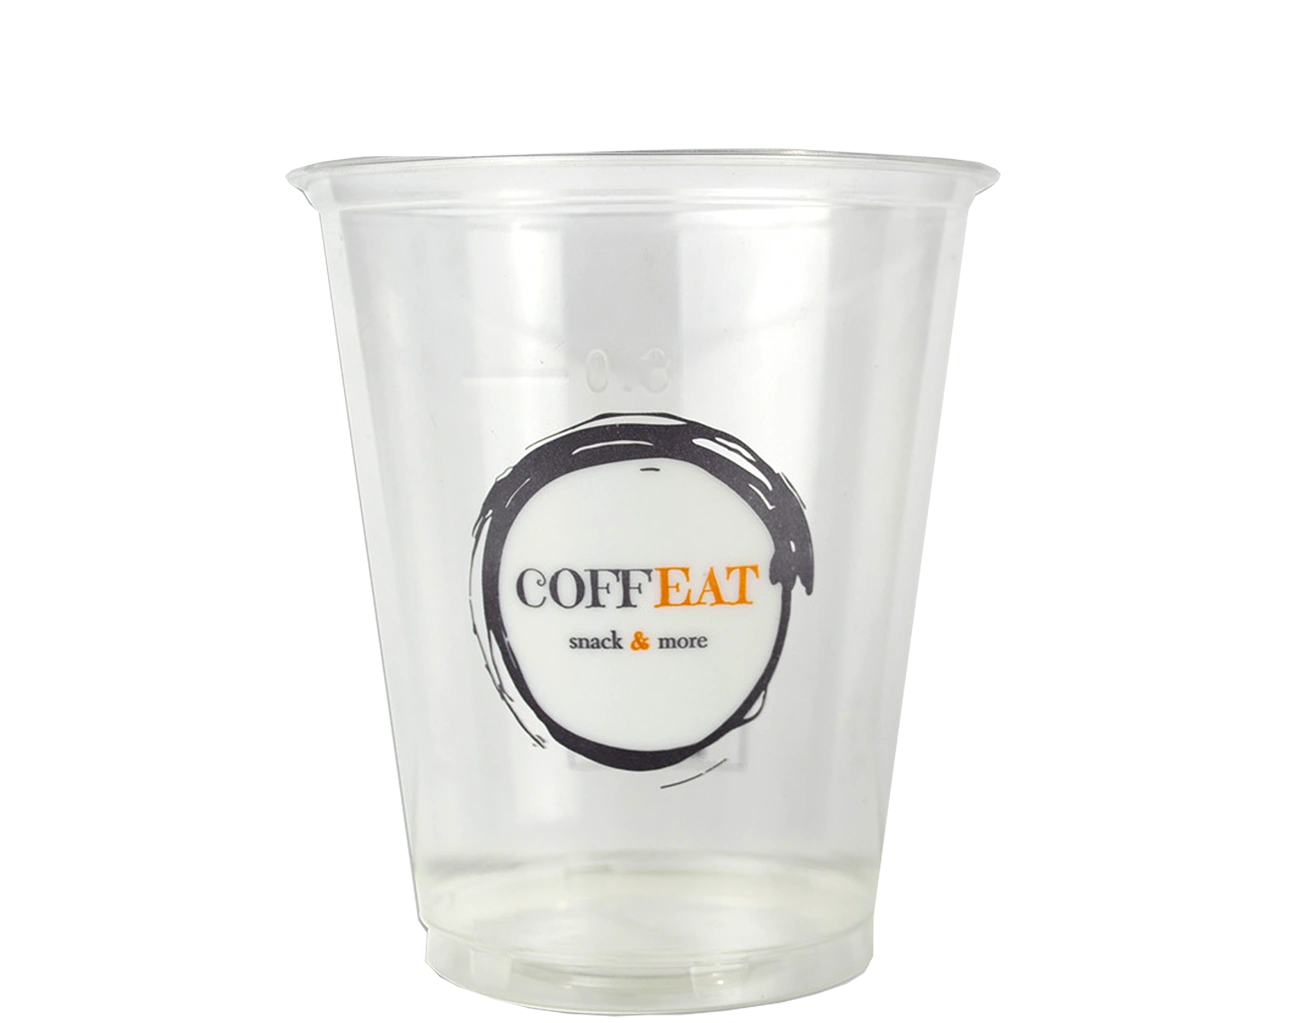 Esthétique et Consignable, cet Eco-Cup Personnalisé pour Enseigne de restauration rapide dispose d'une impression extérieure en 1 Couleur Recto/Verso.